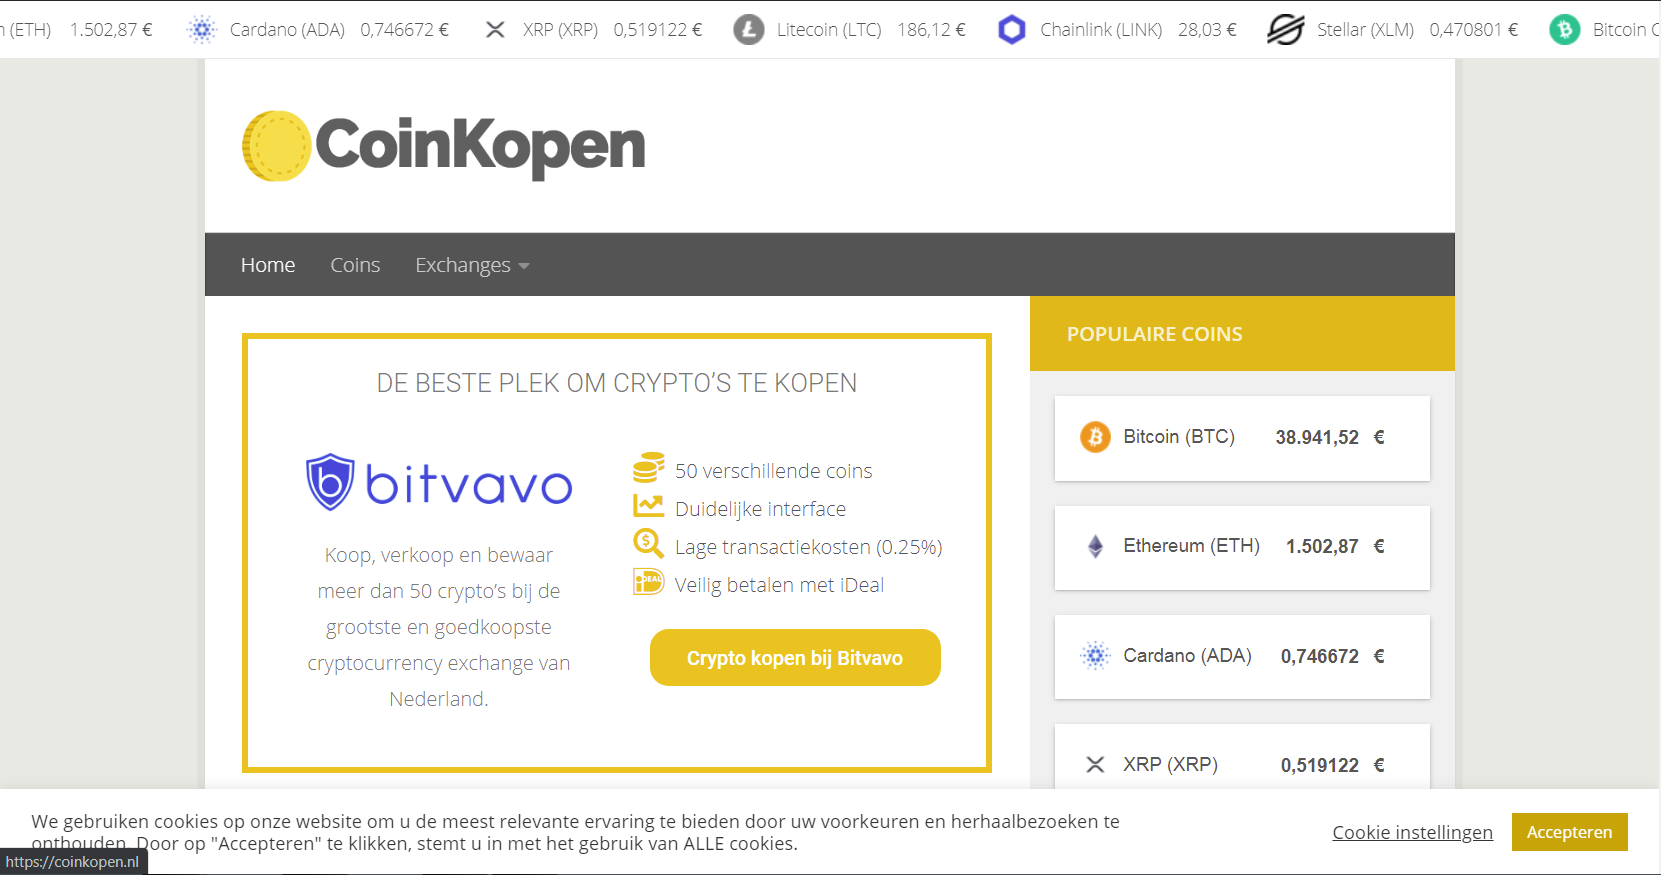 Coinkopen.nl | Crypto Website | Profiteer van de snel groeiende crypto markt-capture-png